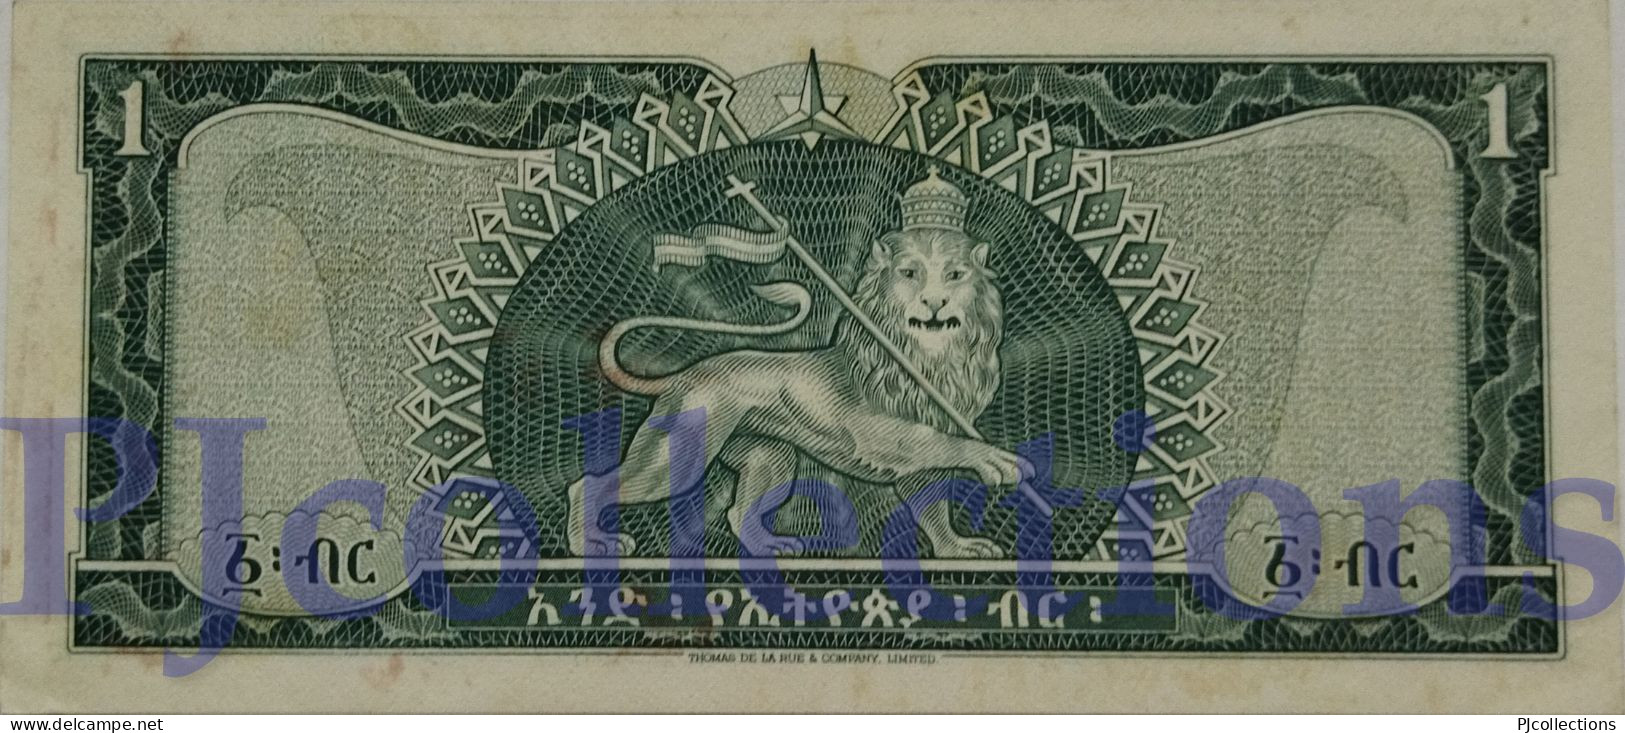 ETHIOPIA 1 DOLLAR 1966 PICK 25a AUNC W/LIGHT STAINS ON THE LEFT EDGE - Ethiopia